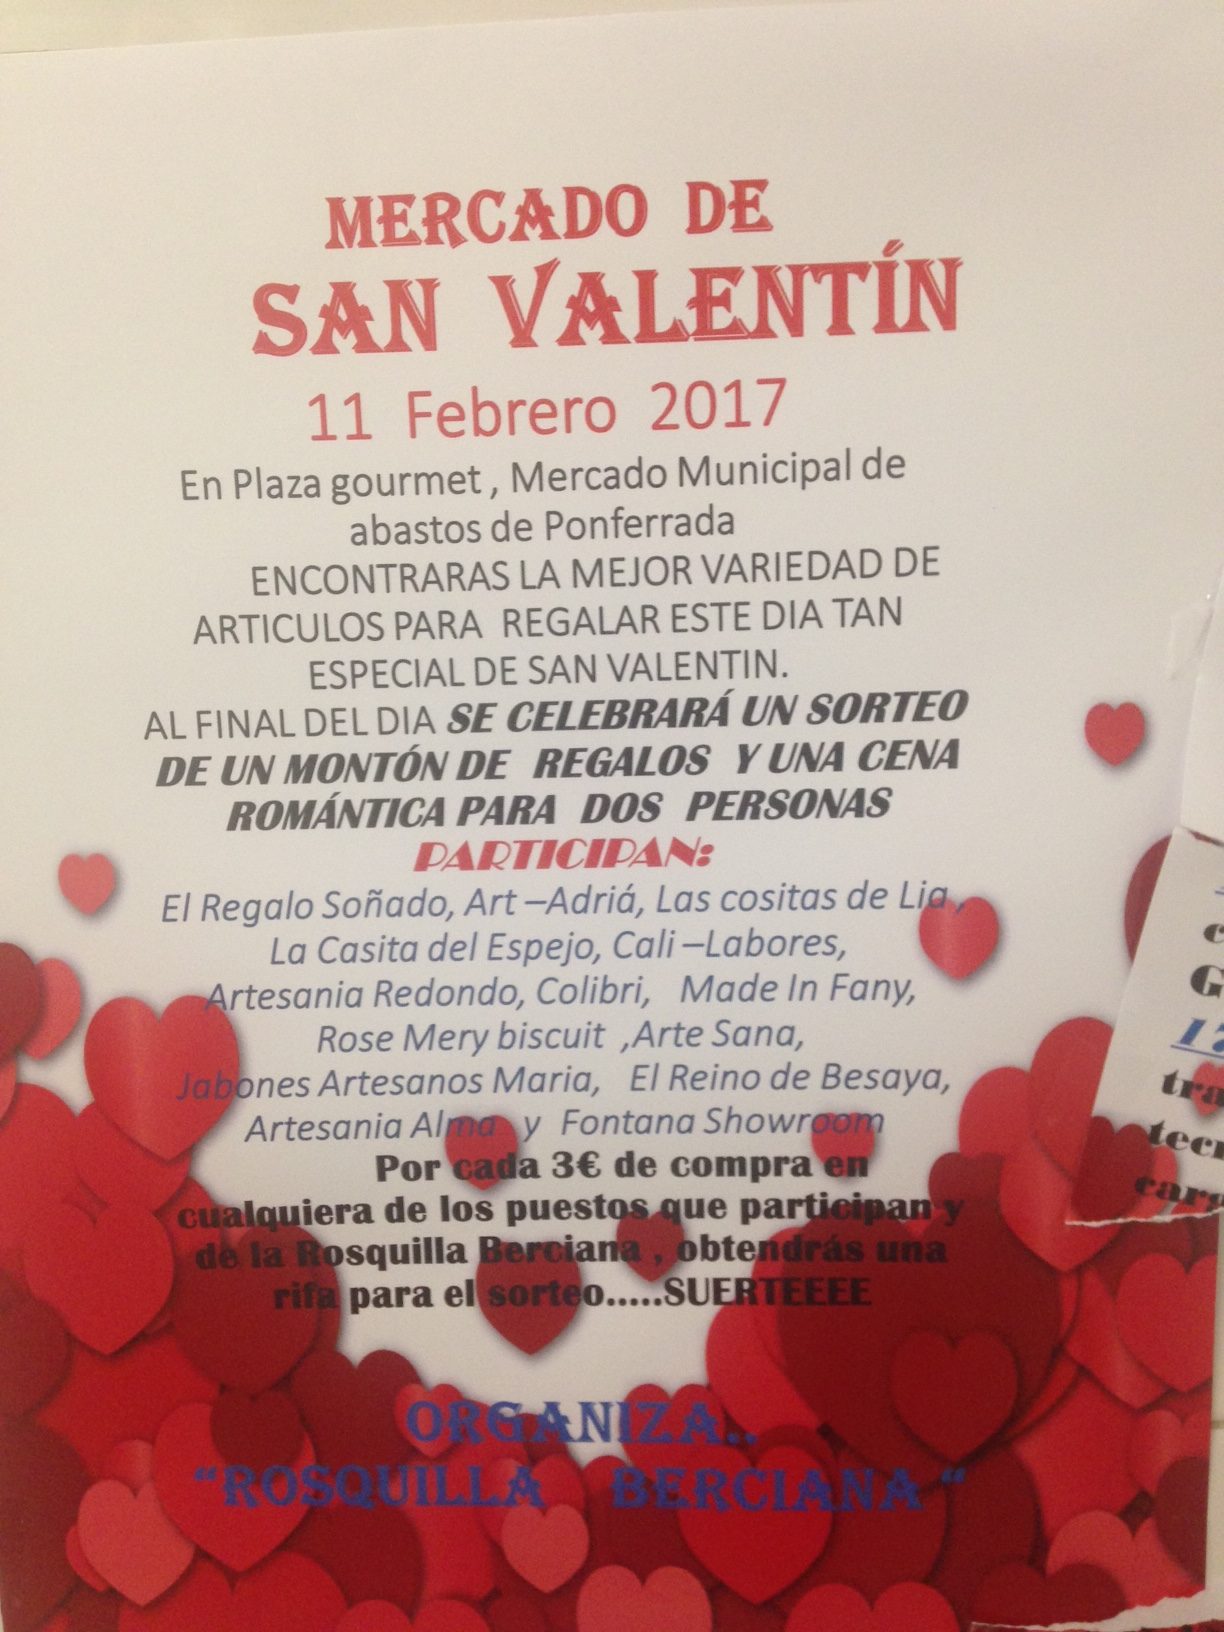 Plaza Gourmet organiza el sábado una Feria de San Valentín 2